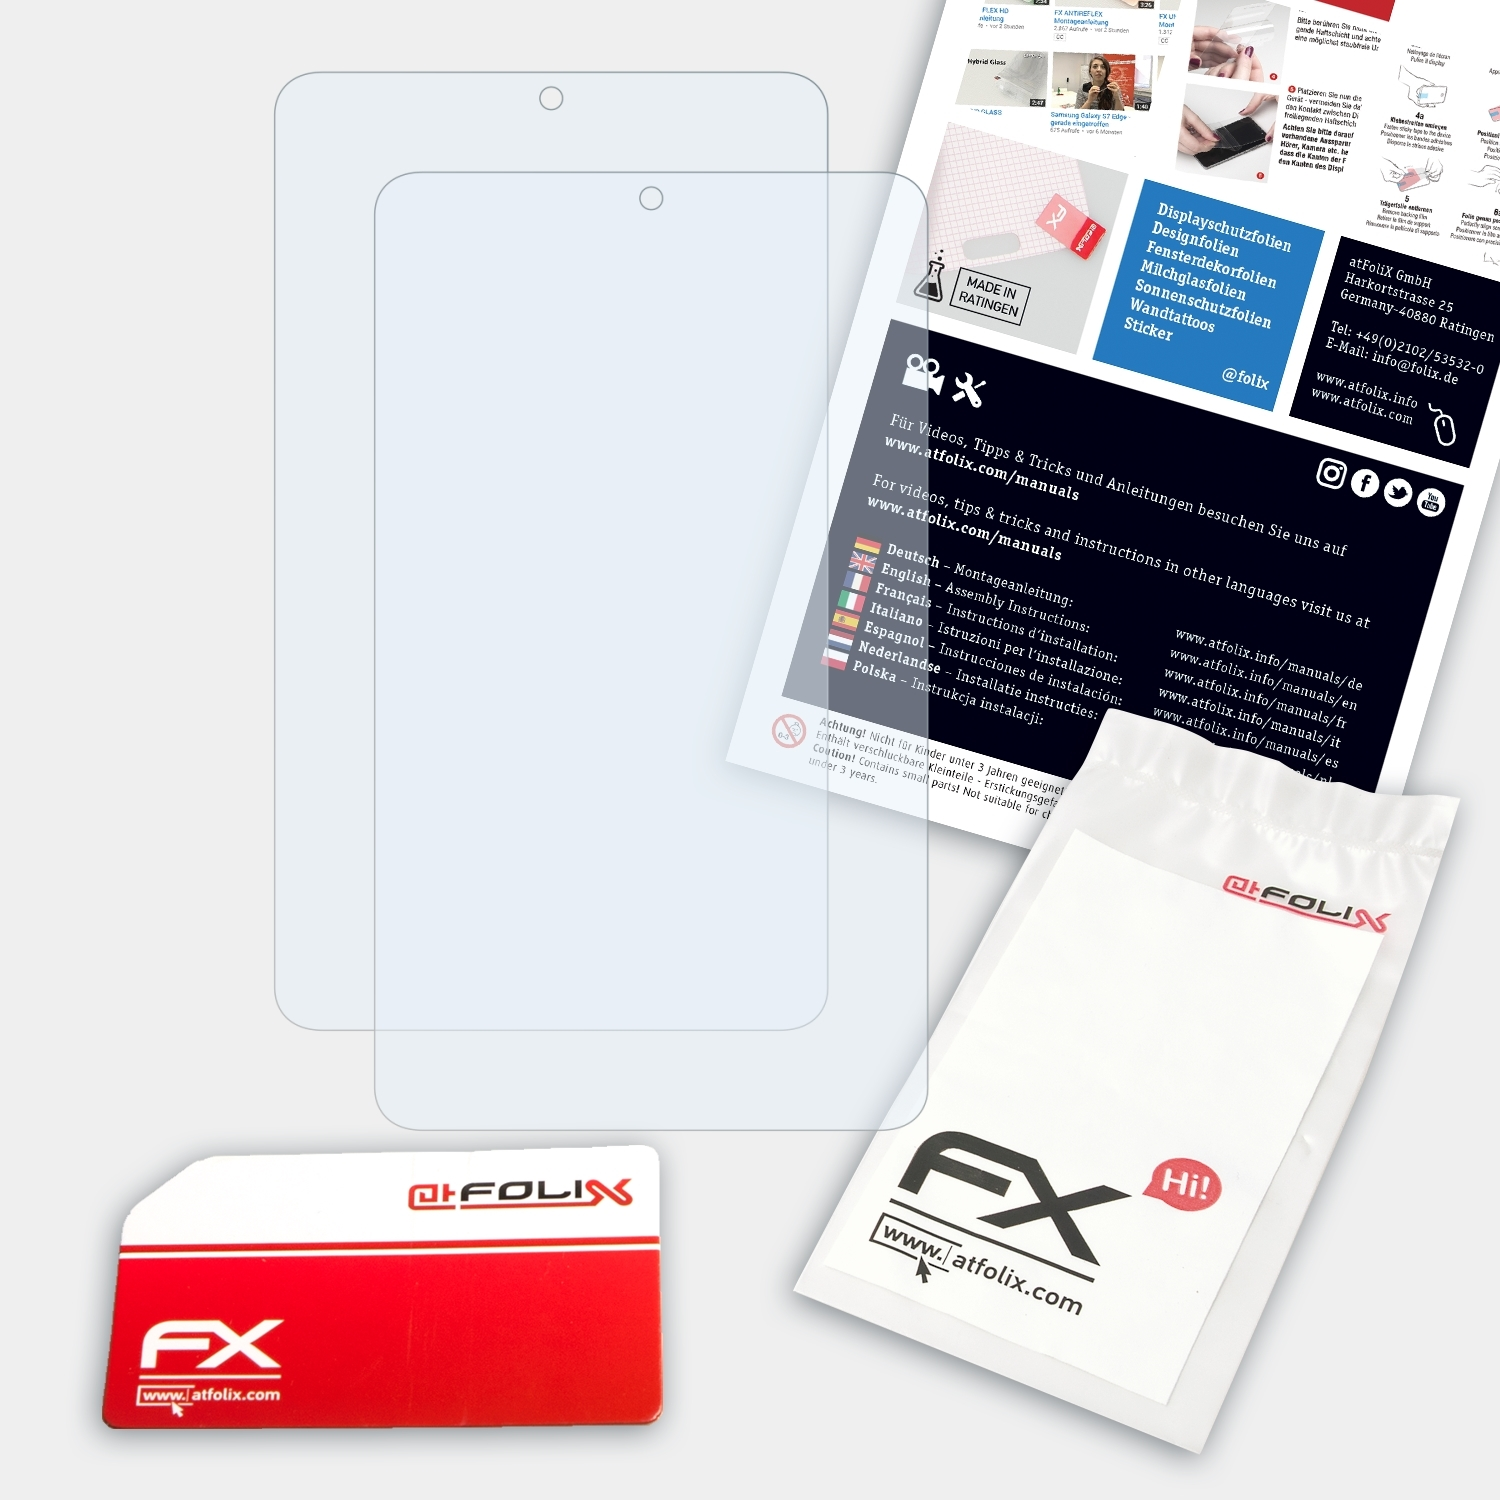 ATFOLIX 2x Displayschutz(für (7) Pixi Touch 3 (4G/LTE)) Alcatel One FX-Clear